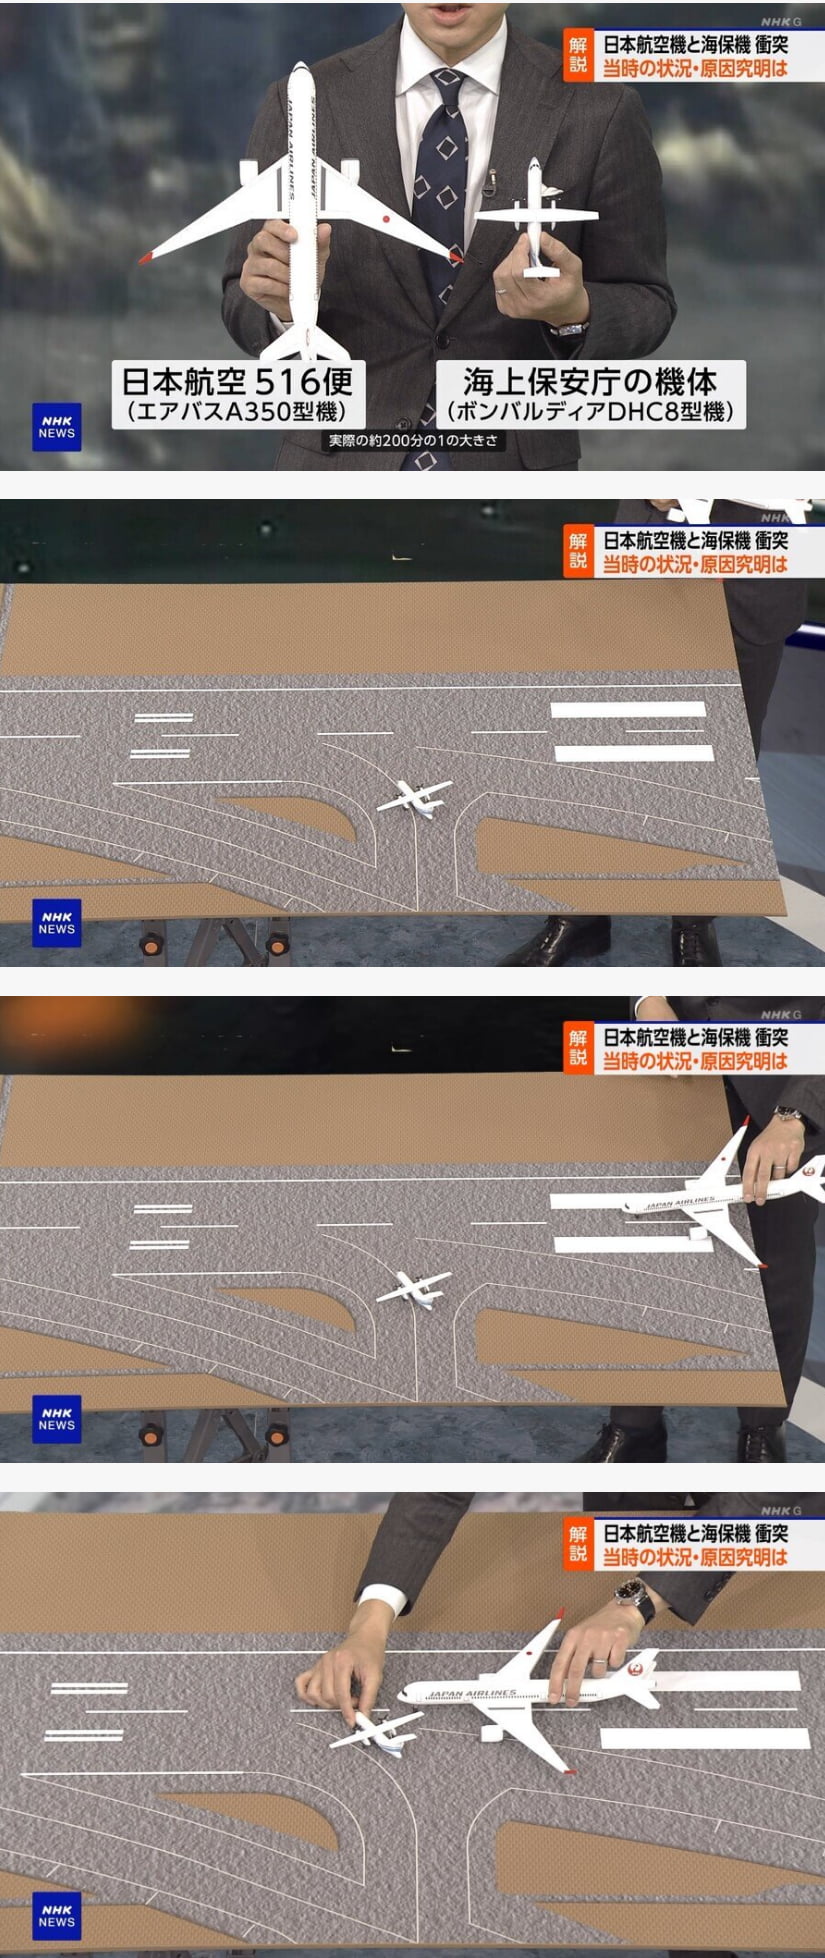 일본 NHK 방송국 근황&#44; 하네다 공항 항공기 충돌사고 뉴스 방송